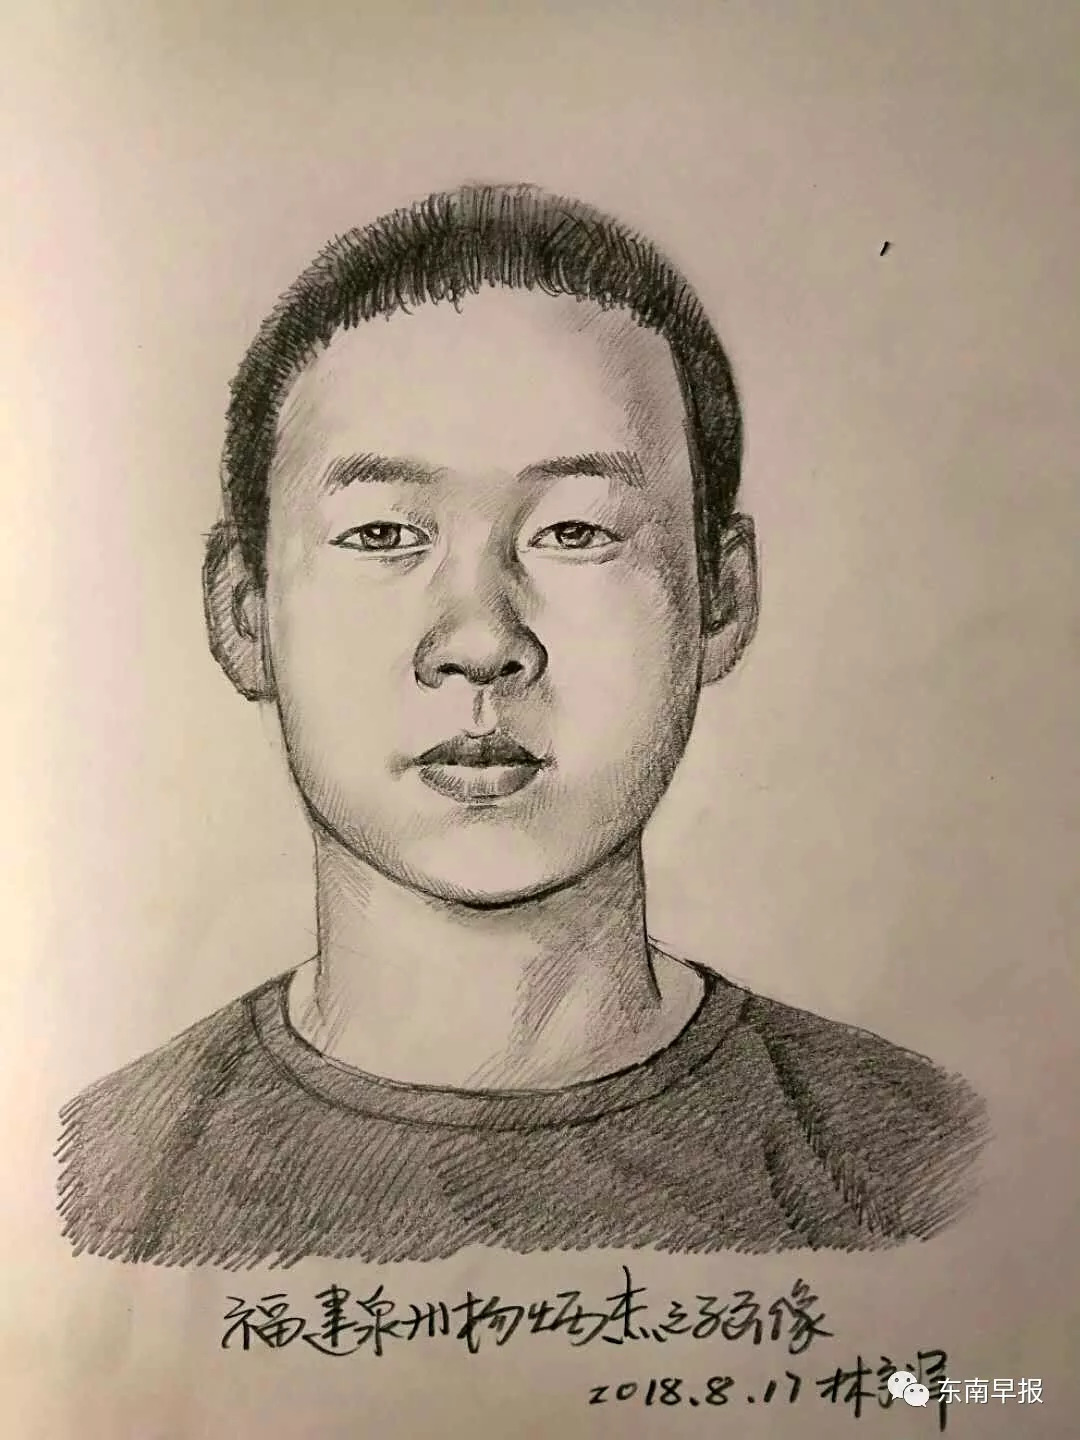 全国关注!泉州男孩失踪9年了!神笔画出15